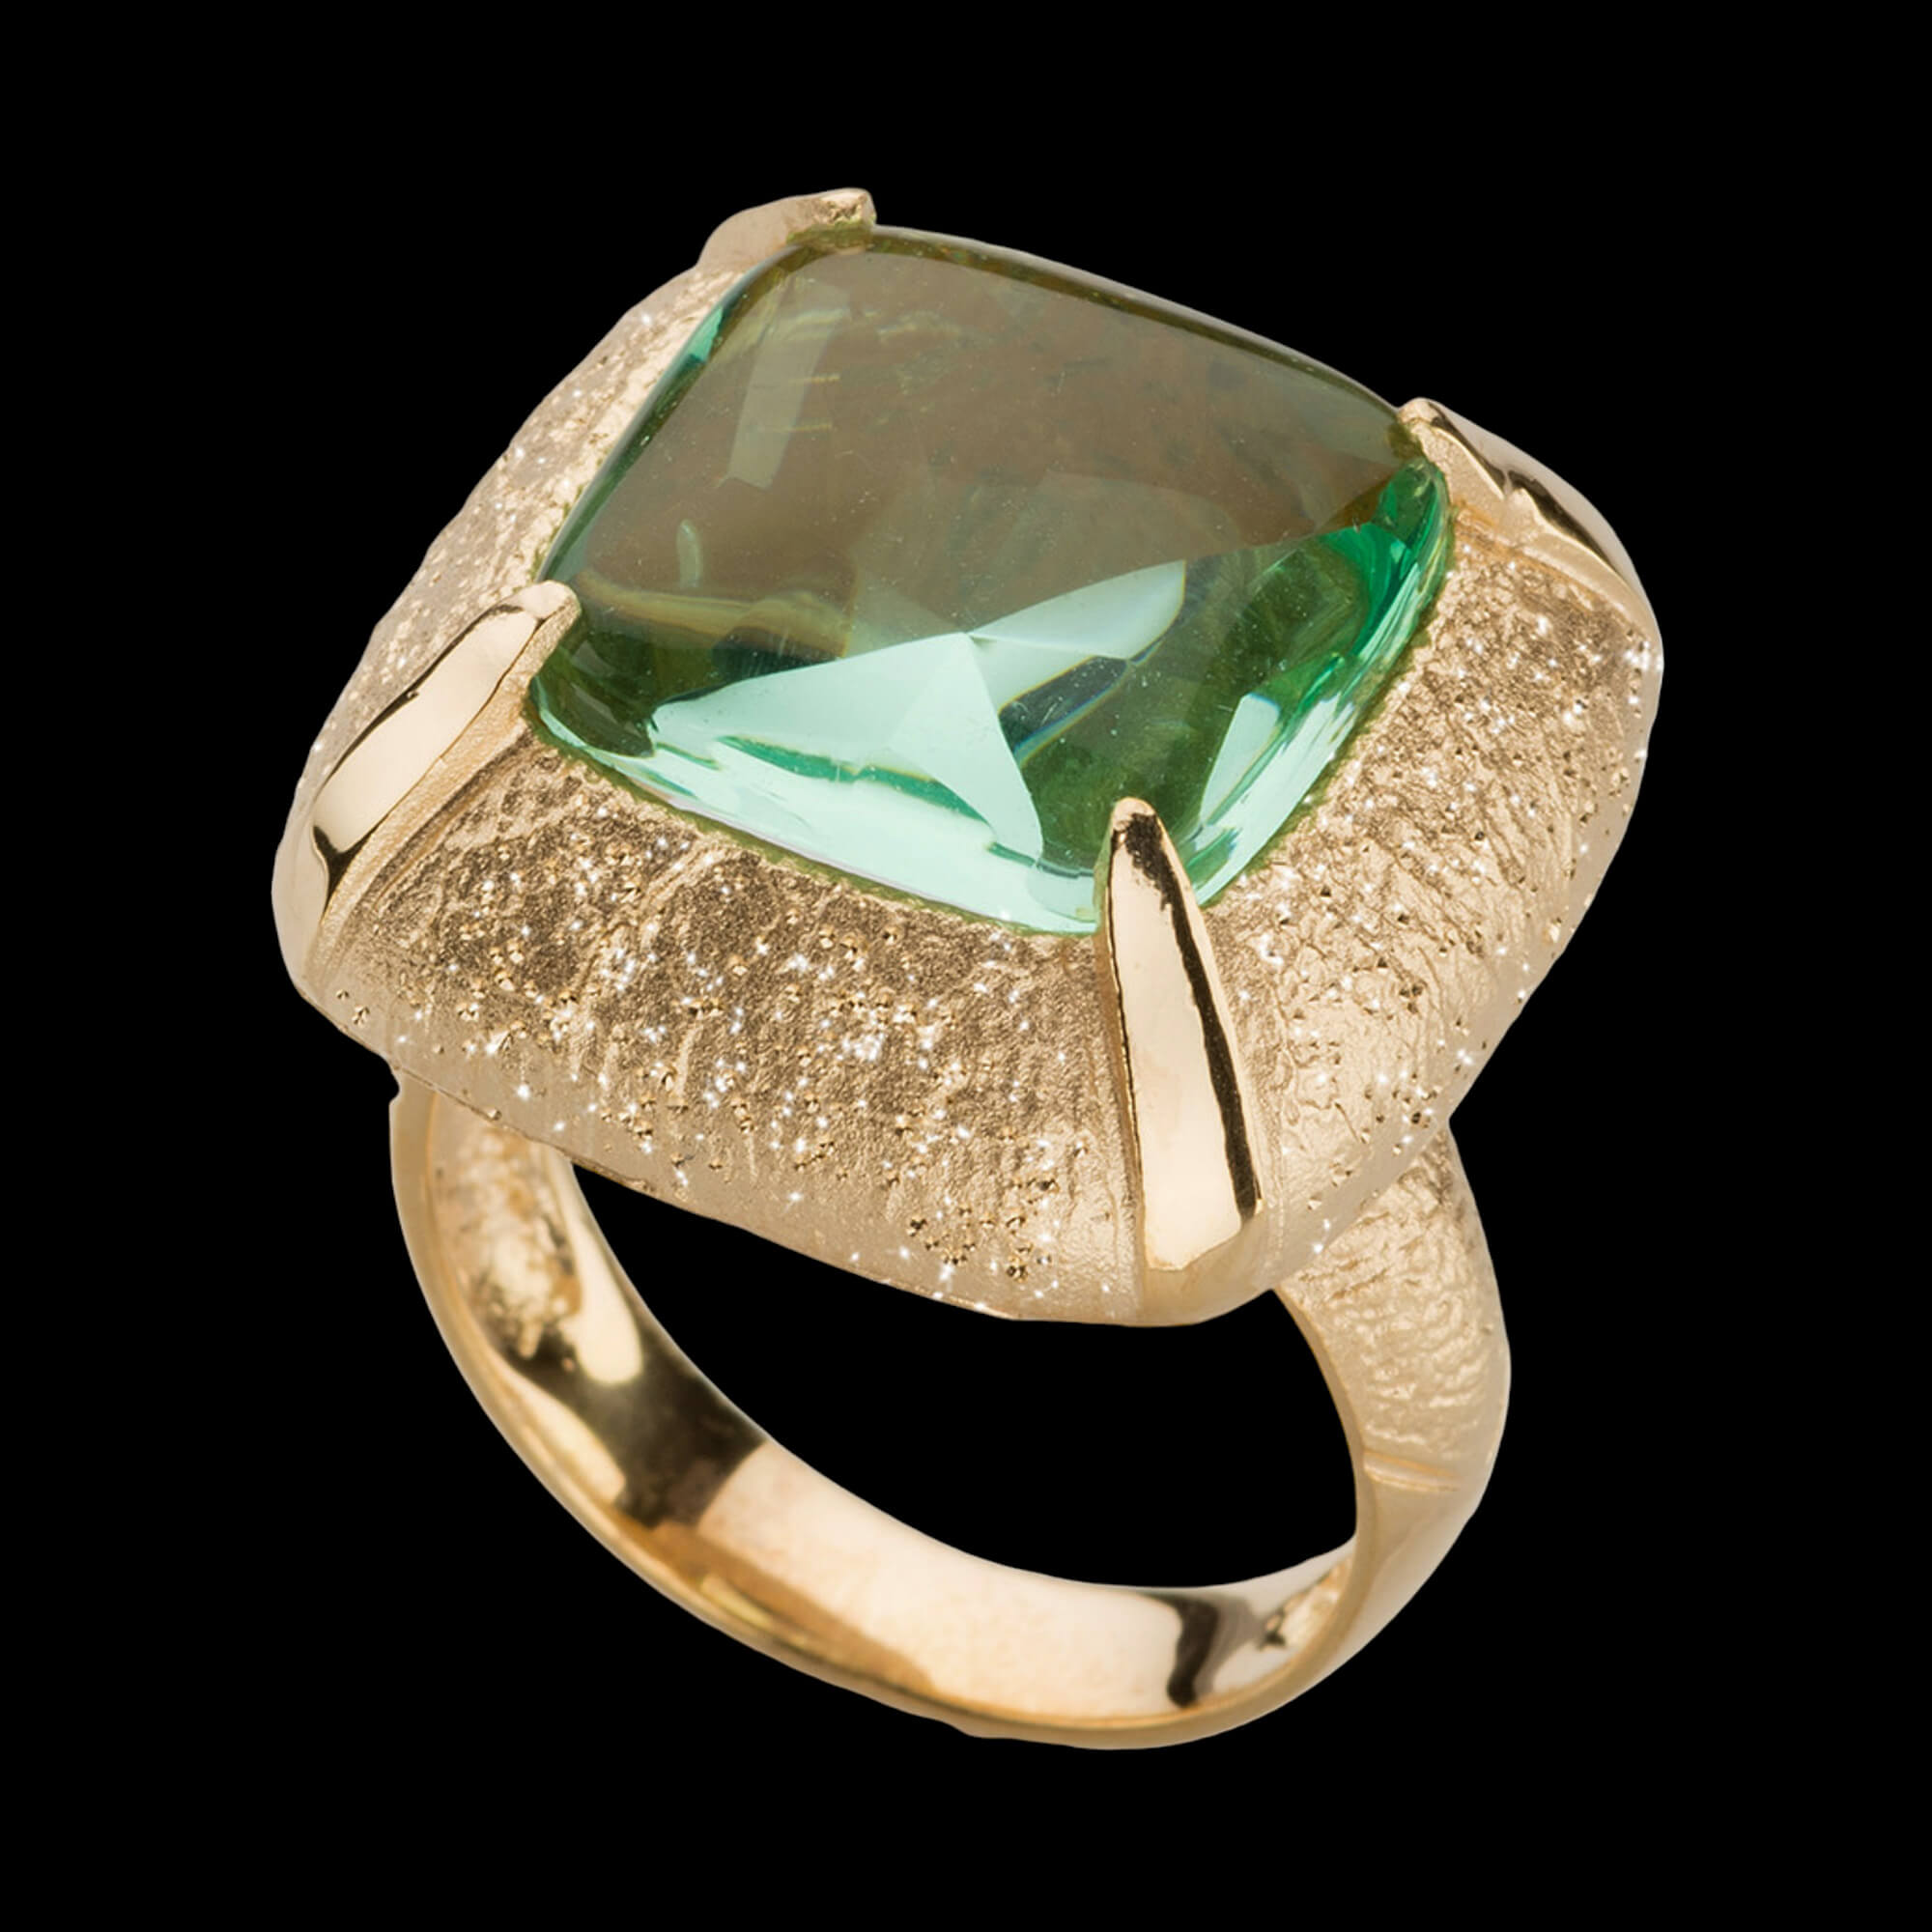 Vergulde vierkantvormige ring met een groene steen